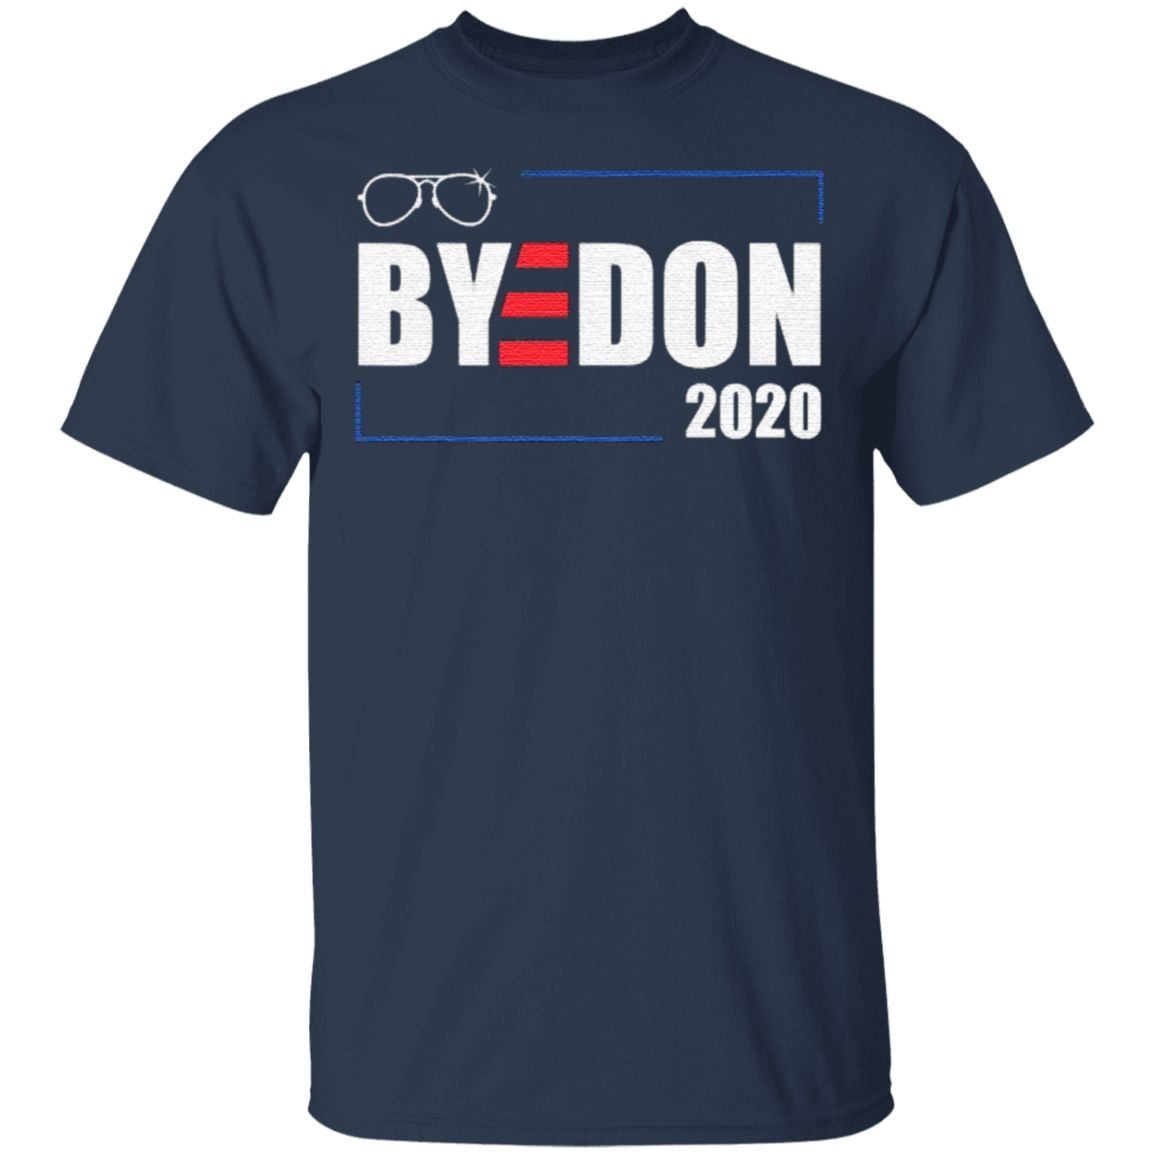 Boss man biden patriotic blue democrat 2020 stars t shirt